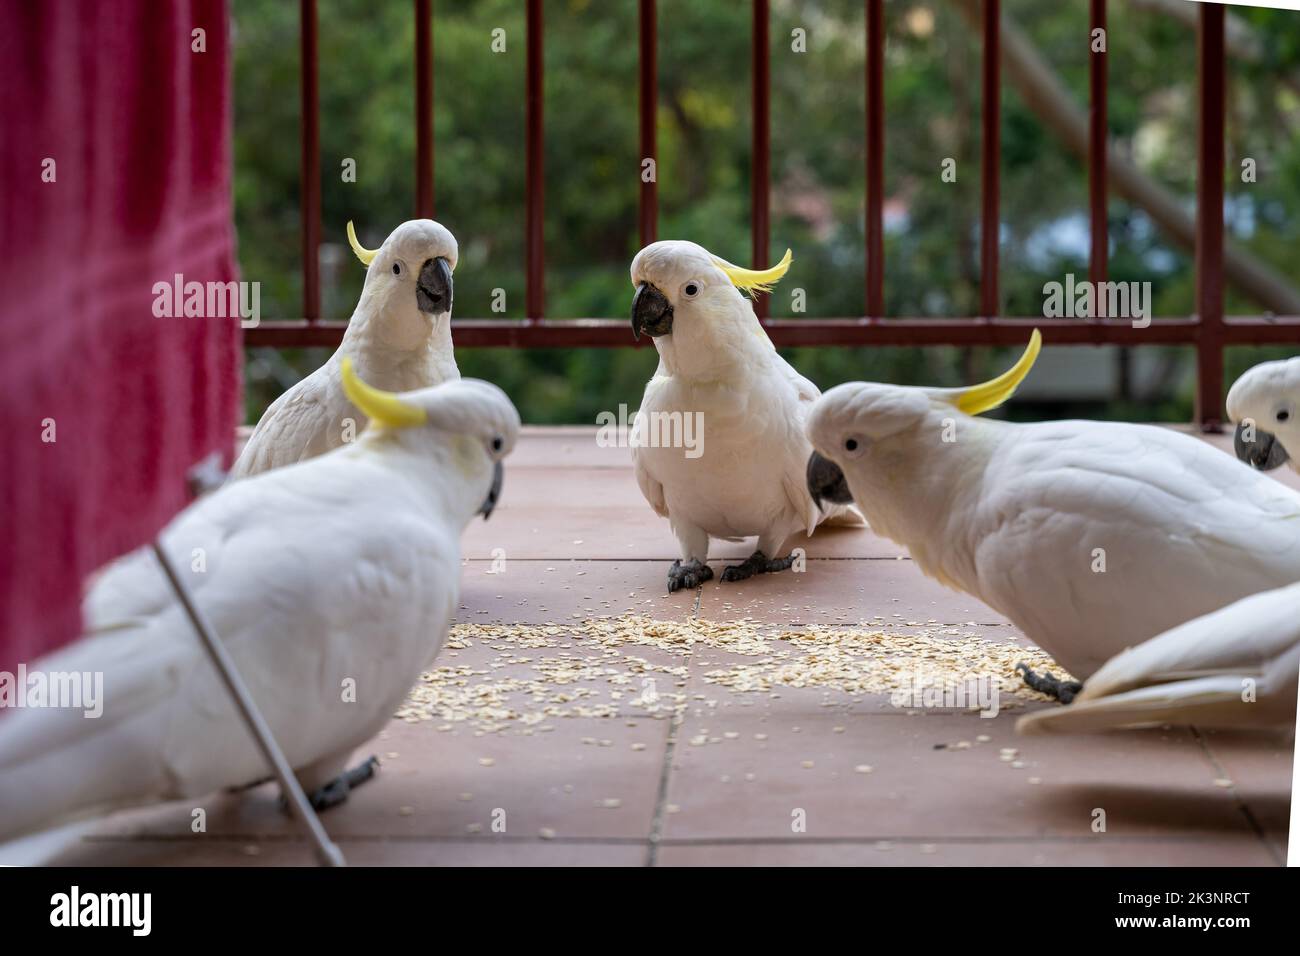 Australische einheimische Kakadu-Vögel, die sich auf dem Balkon des Wohnhauses in Australien mit Getreide füttern. Konzept von Vögeln, die in städtischen Gebieten mit Menschen überleben. Stockfoto